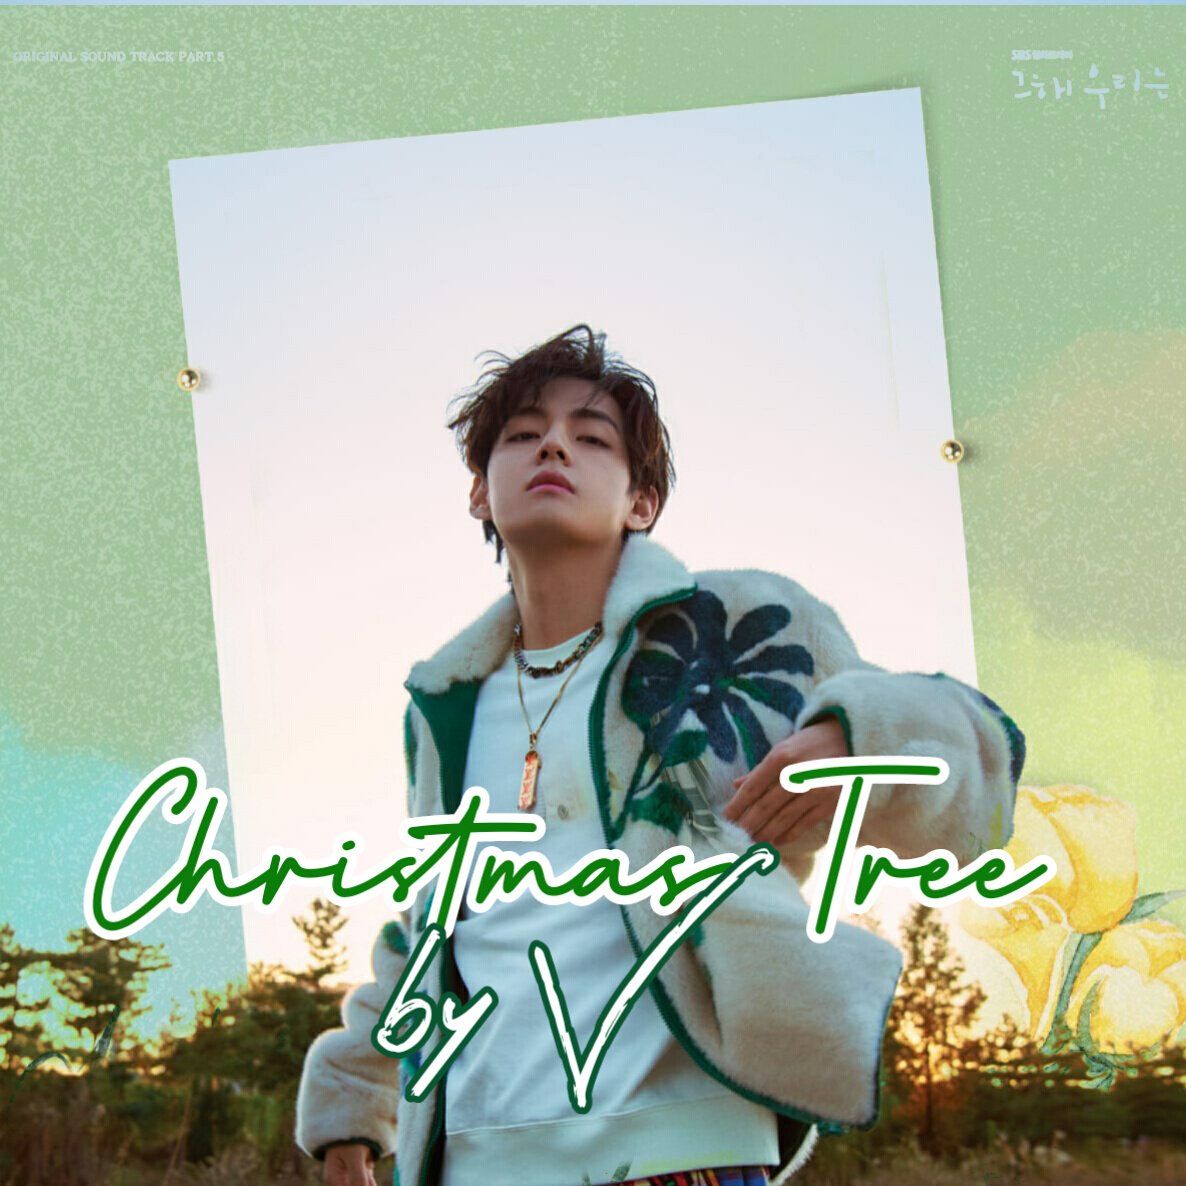 Playlist listas para Christmas Tree 🌲⛄ #ChristmasTree #V_ChristmasTree #BTSV #ChristmasTree_byV @BTS_twt -open.spotify.com/playlist/5K88k… -open.spotify.com/playlist/1wtiK… -open.spotify.com/playlist/2yVrU… -open.spotify.com/playlist/7rXDu…